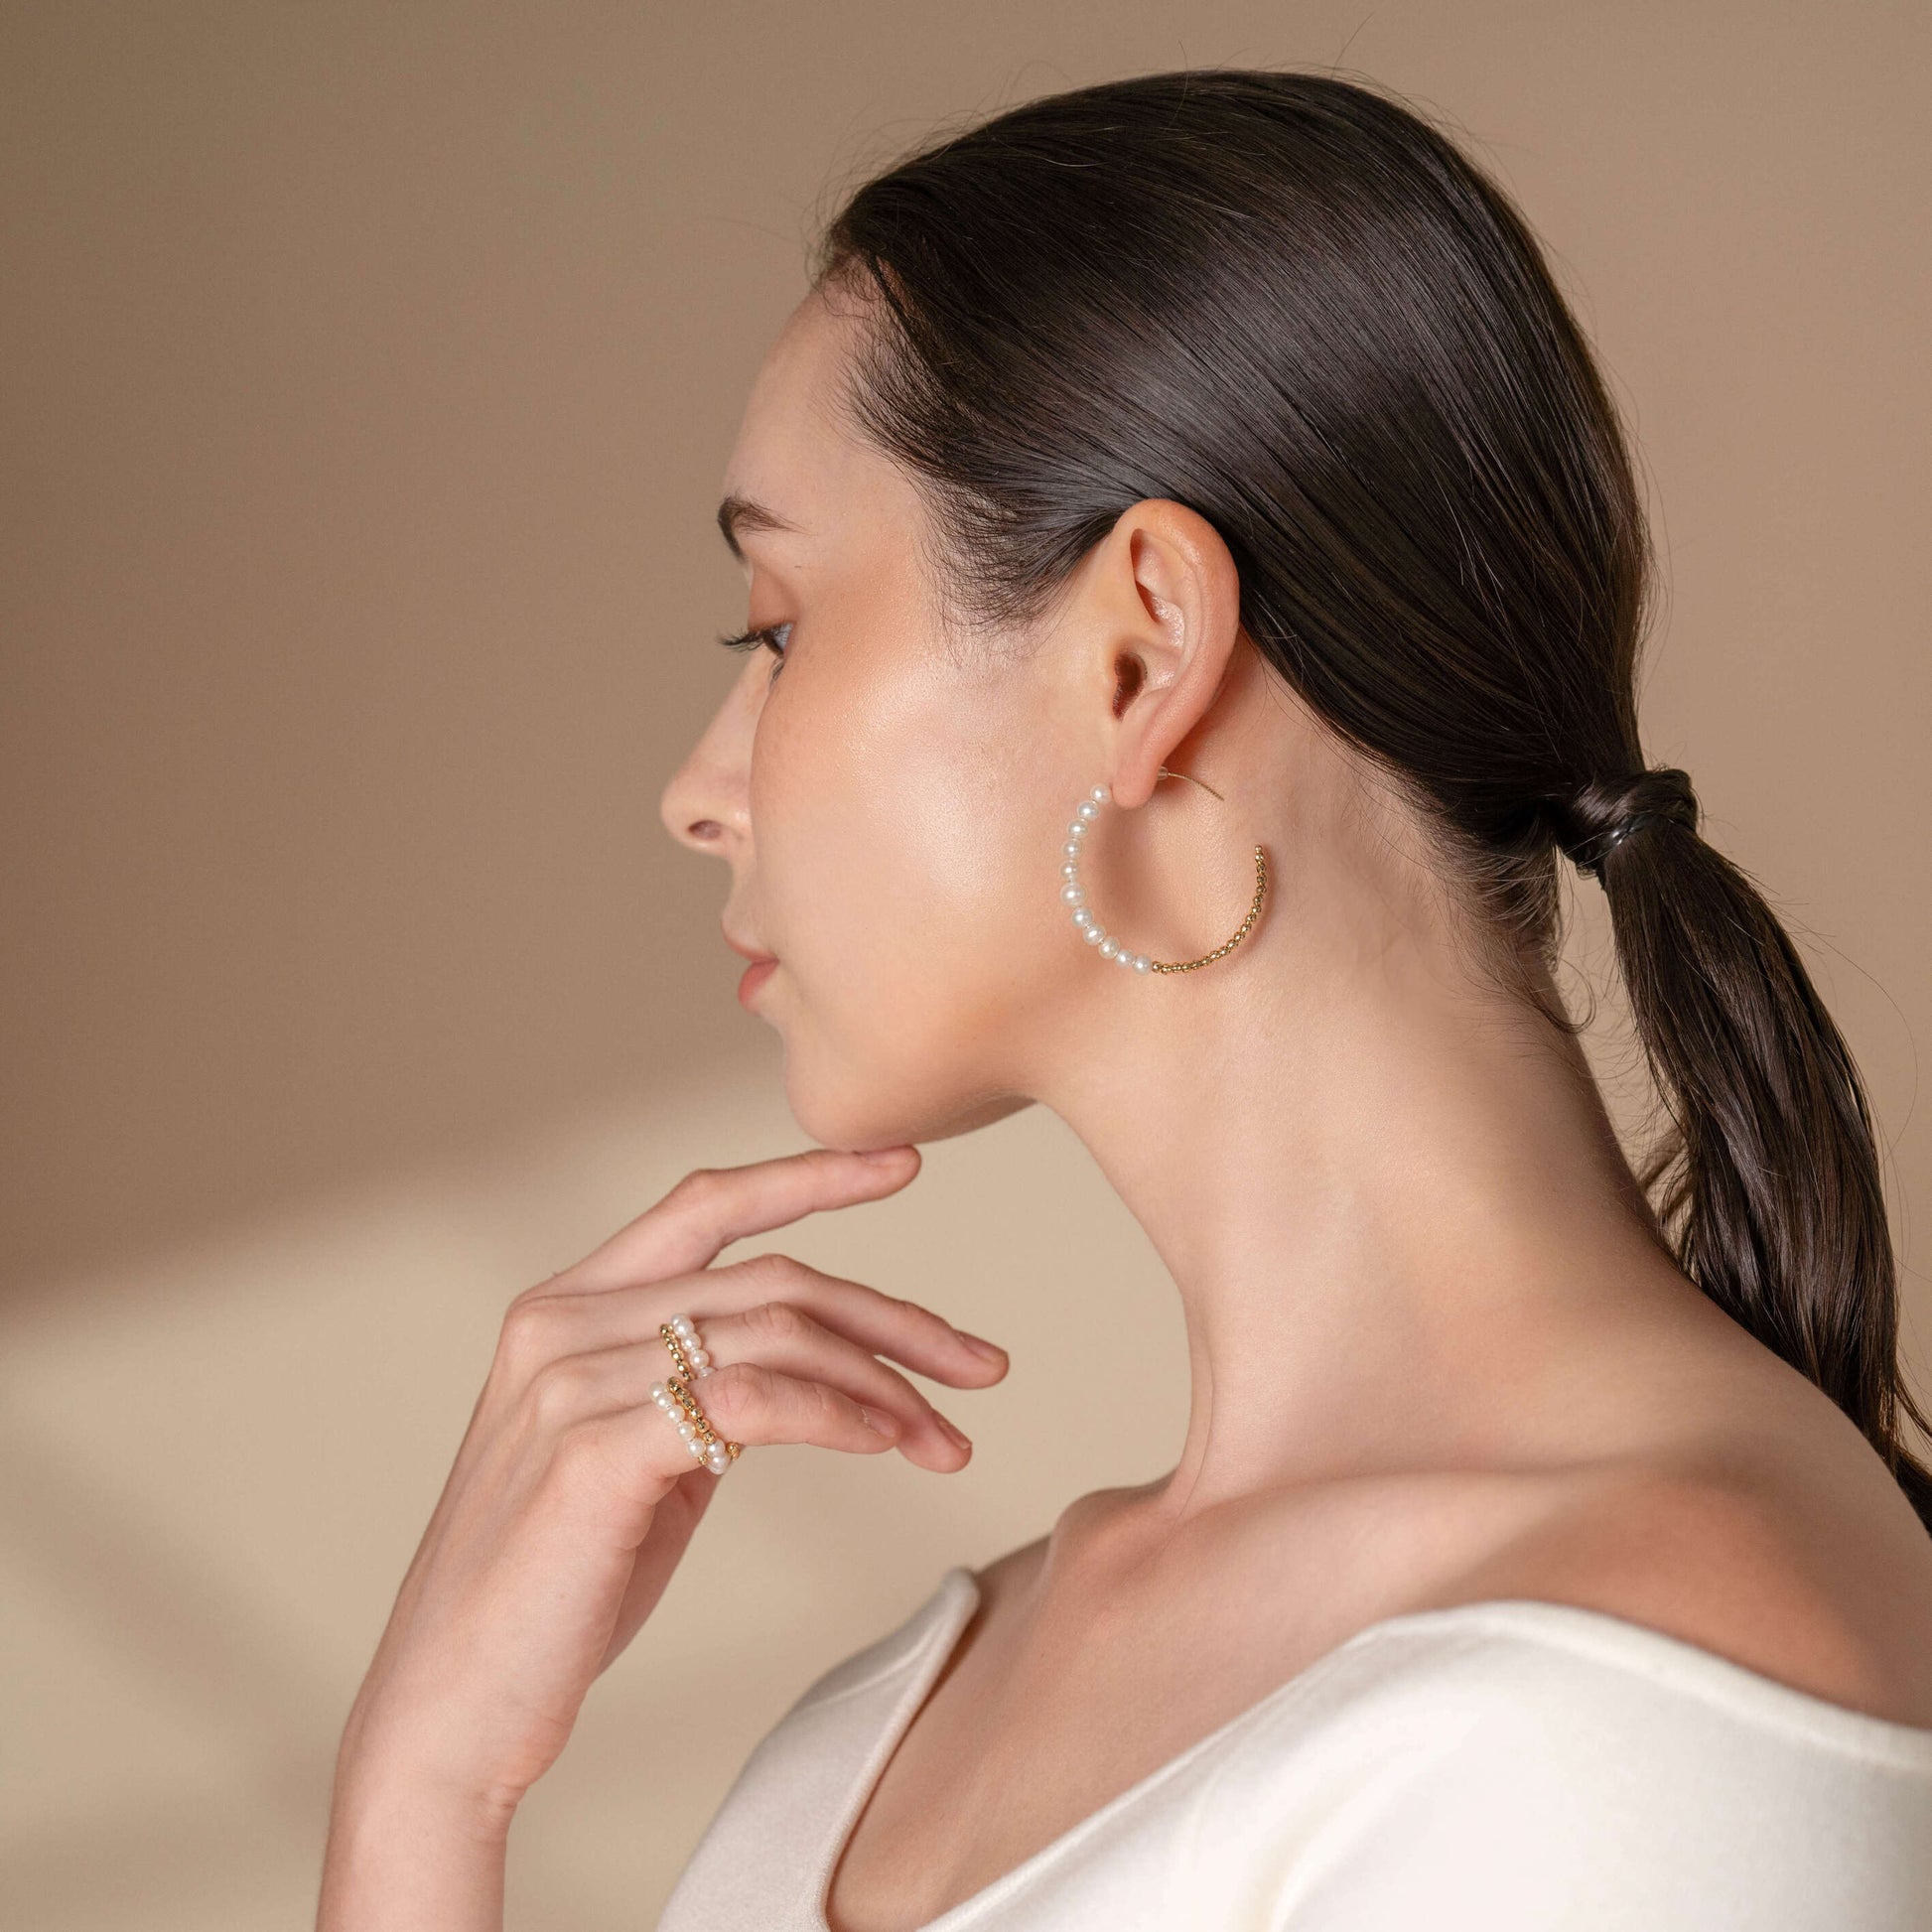 Elegant lady wearing white top and Mirror Gold x Pearl Hoop Pierce earrings.